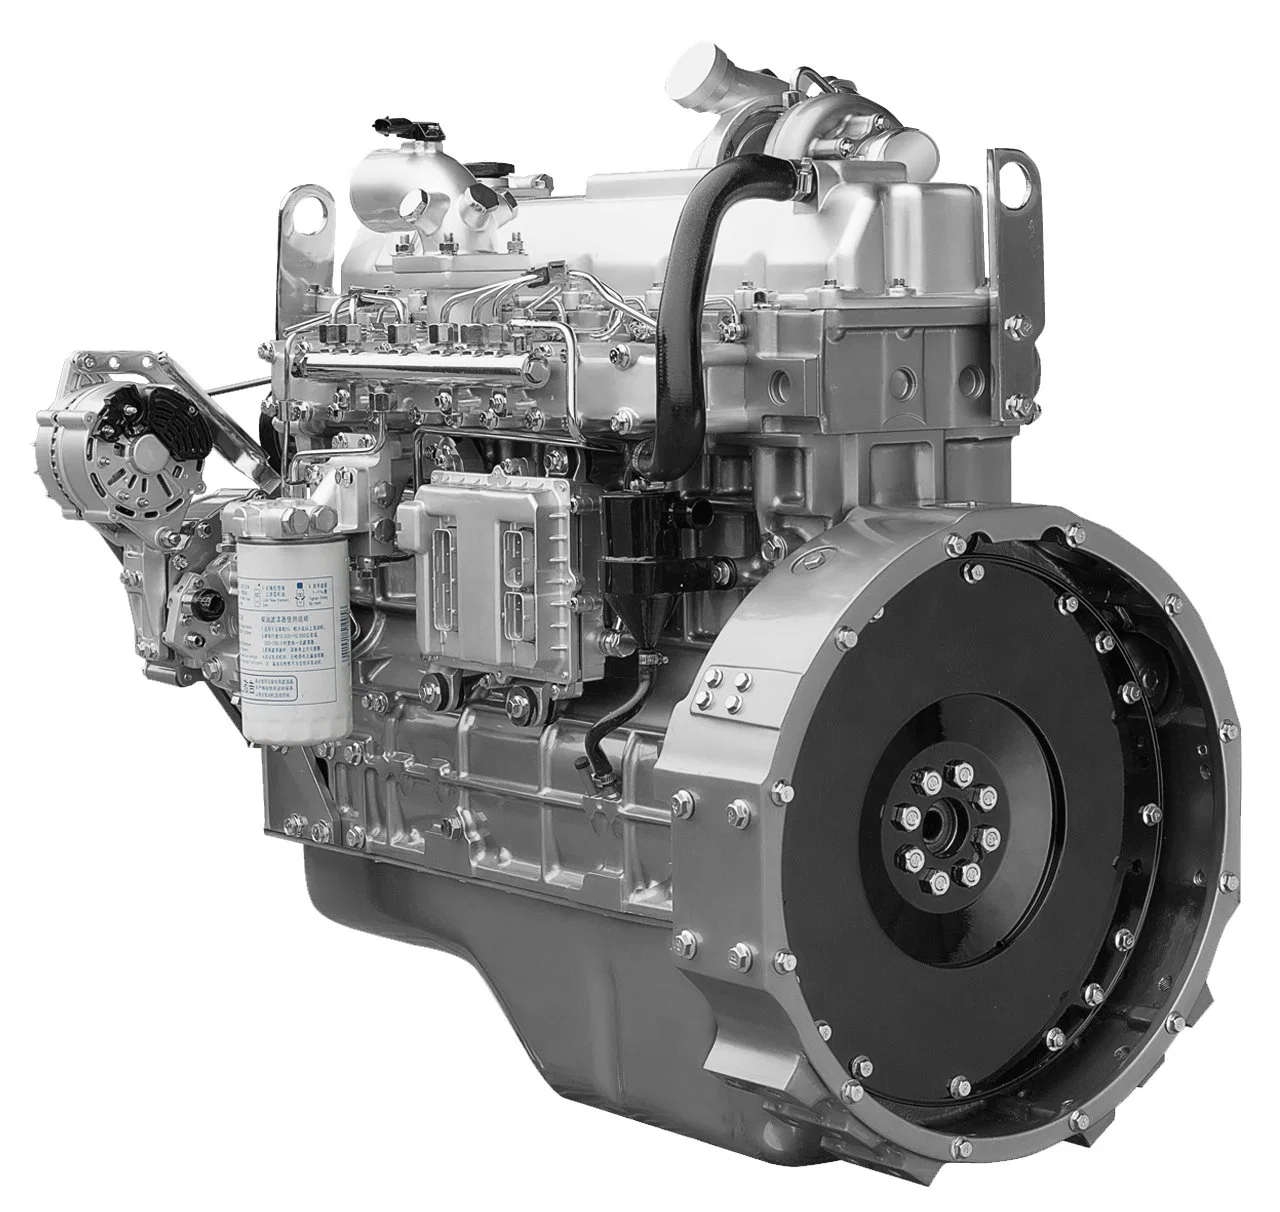 Fourniture d'un moteur diesel classique Yuchai YC6A Euro 5 avec une bonne performance de puissance, une économie et une fiabilité.